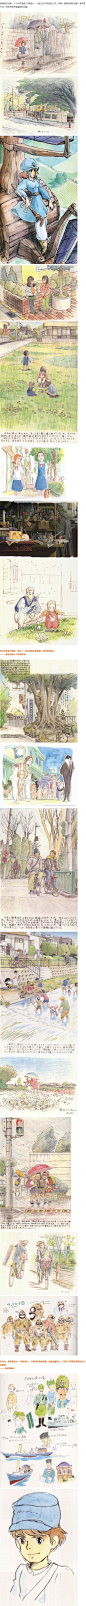 宫崎骏40年原画手稿，美美哒1